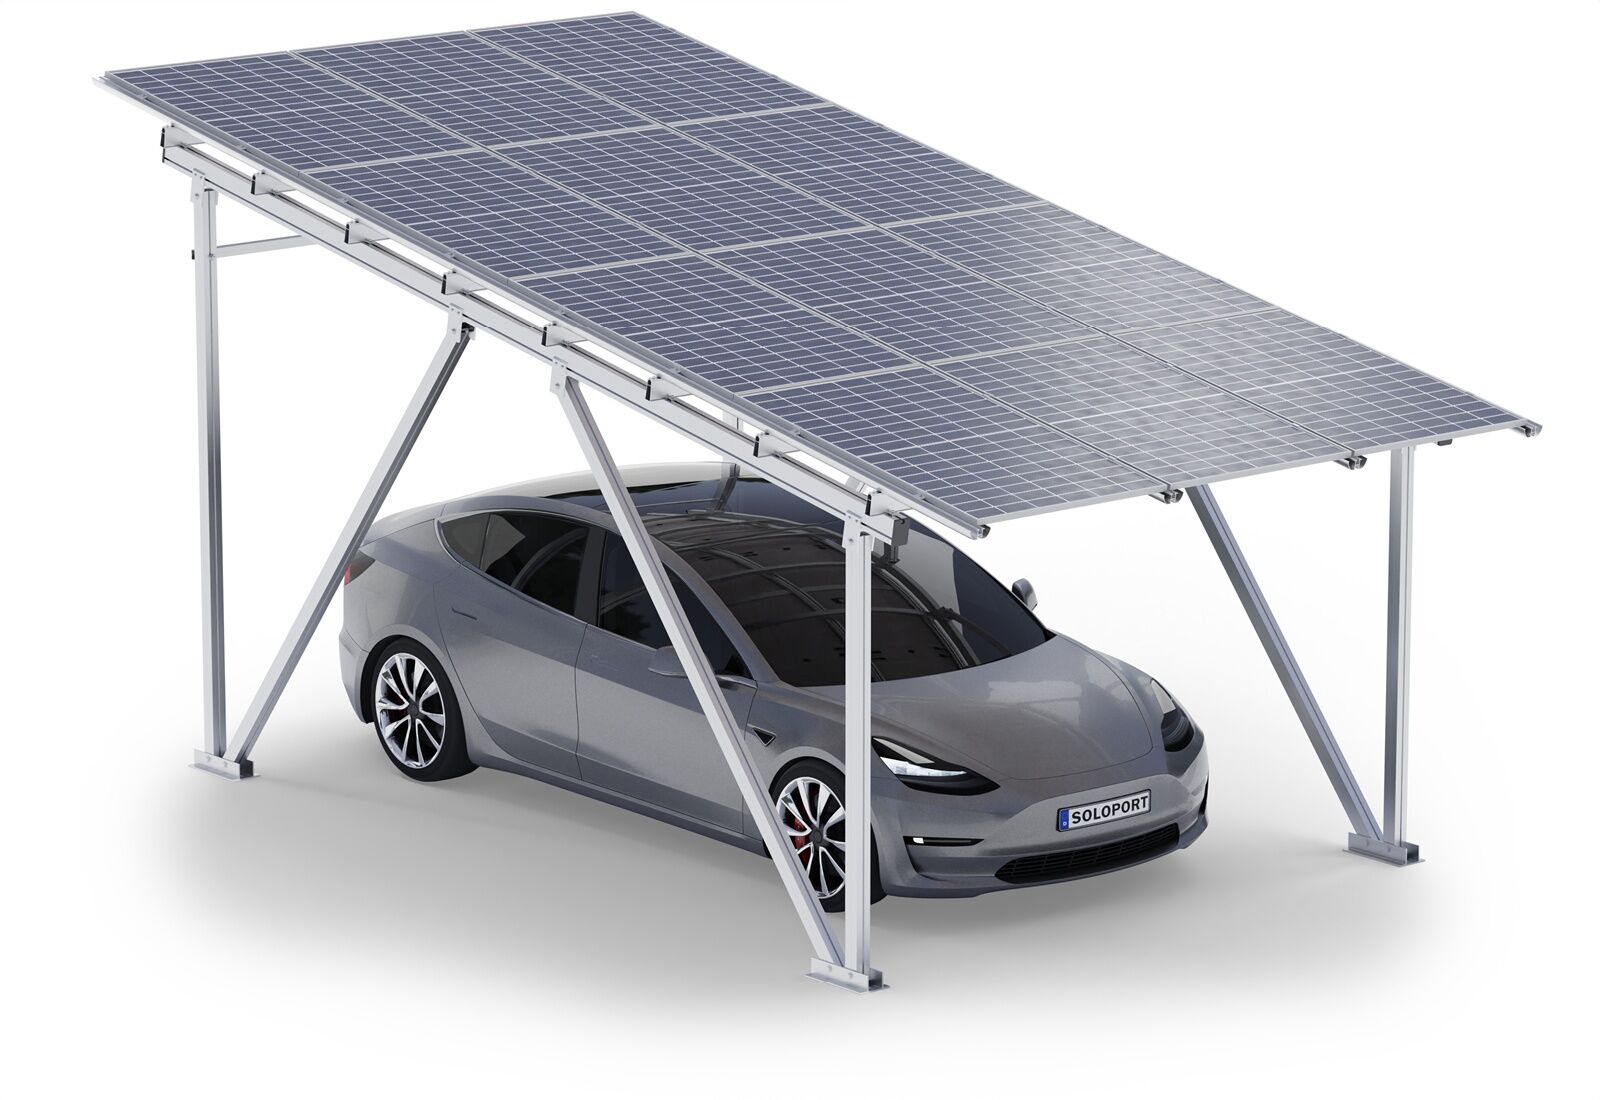 Châssis de carport pour les camping-cars SPG5-W avec 12 panneaux solaires,  aluminium, hauteur de passage 2.920 mm, SoloPort